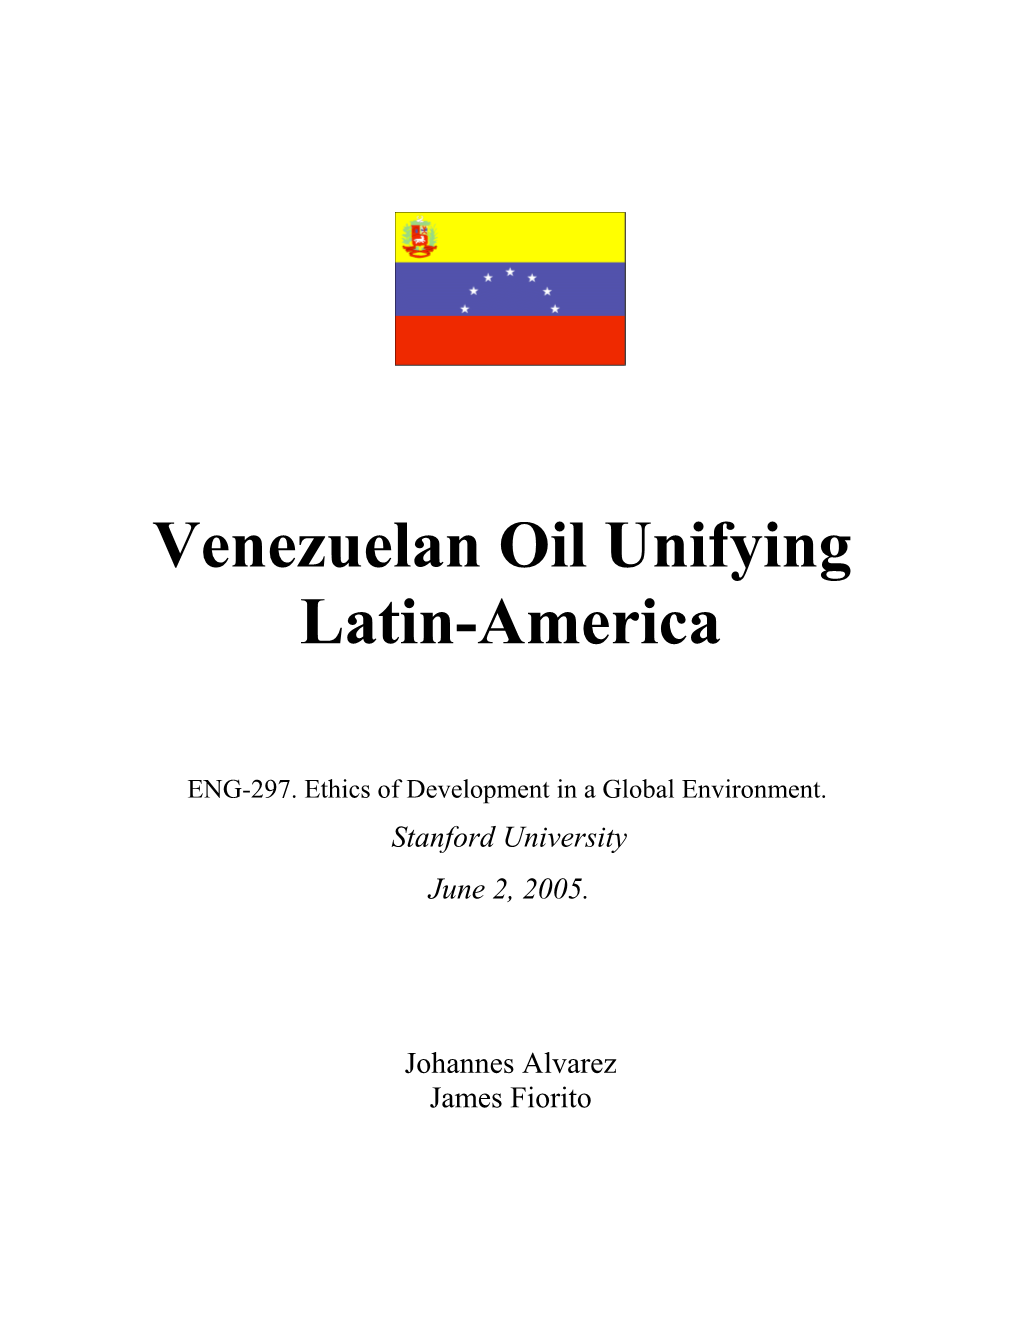 Oil History in Venezuela